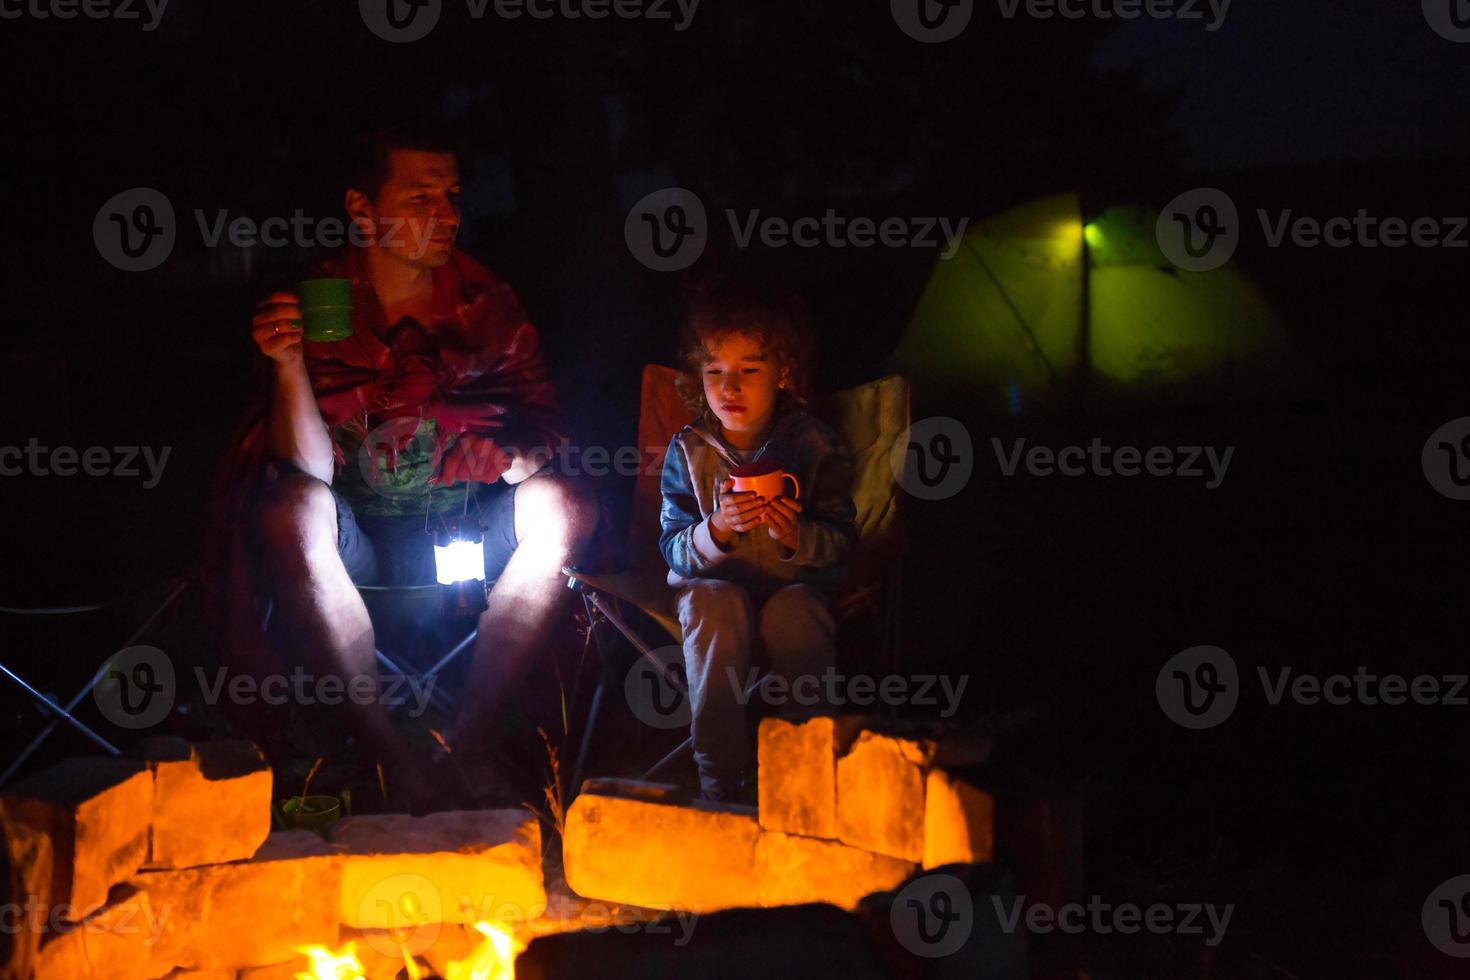 pappa och dotter sitter på natten vid brasan i det fria på sommaren i naturen. familjecamping, samlingar kring lägerelden. fars dag, grillning. campinglykta och tält foto